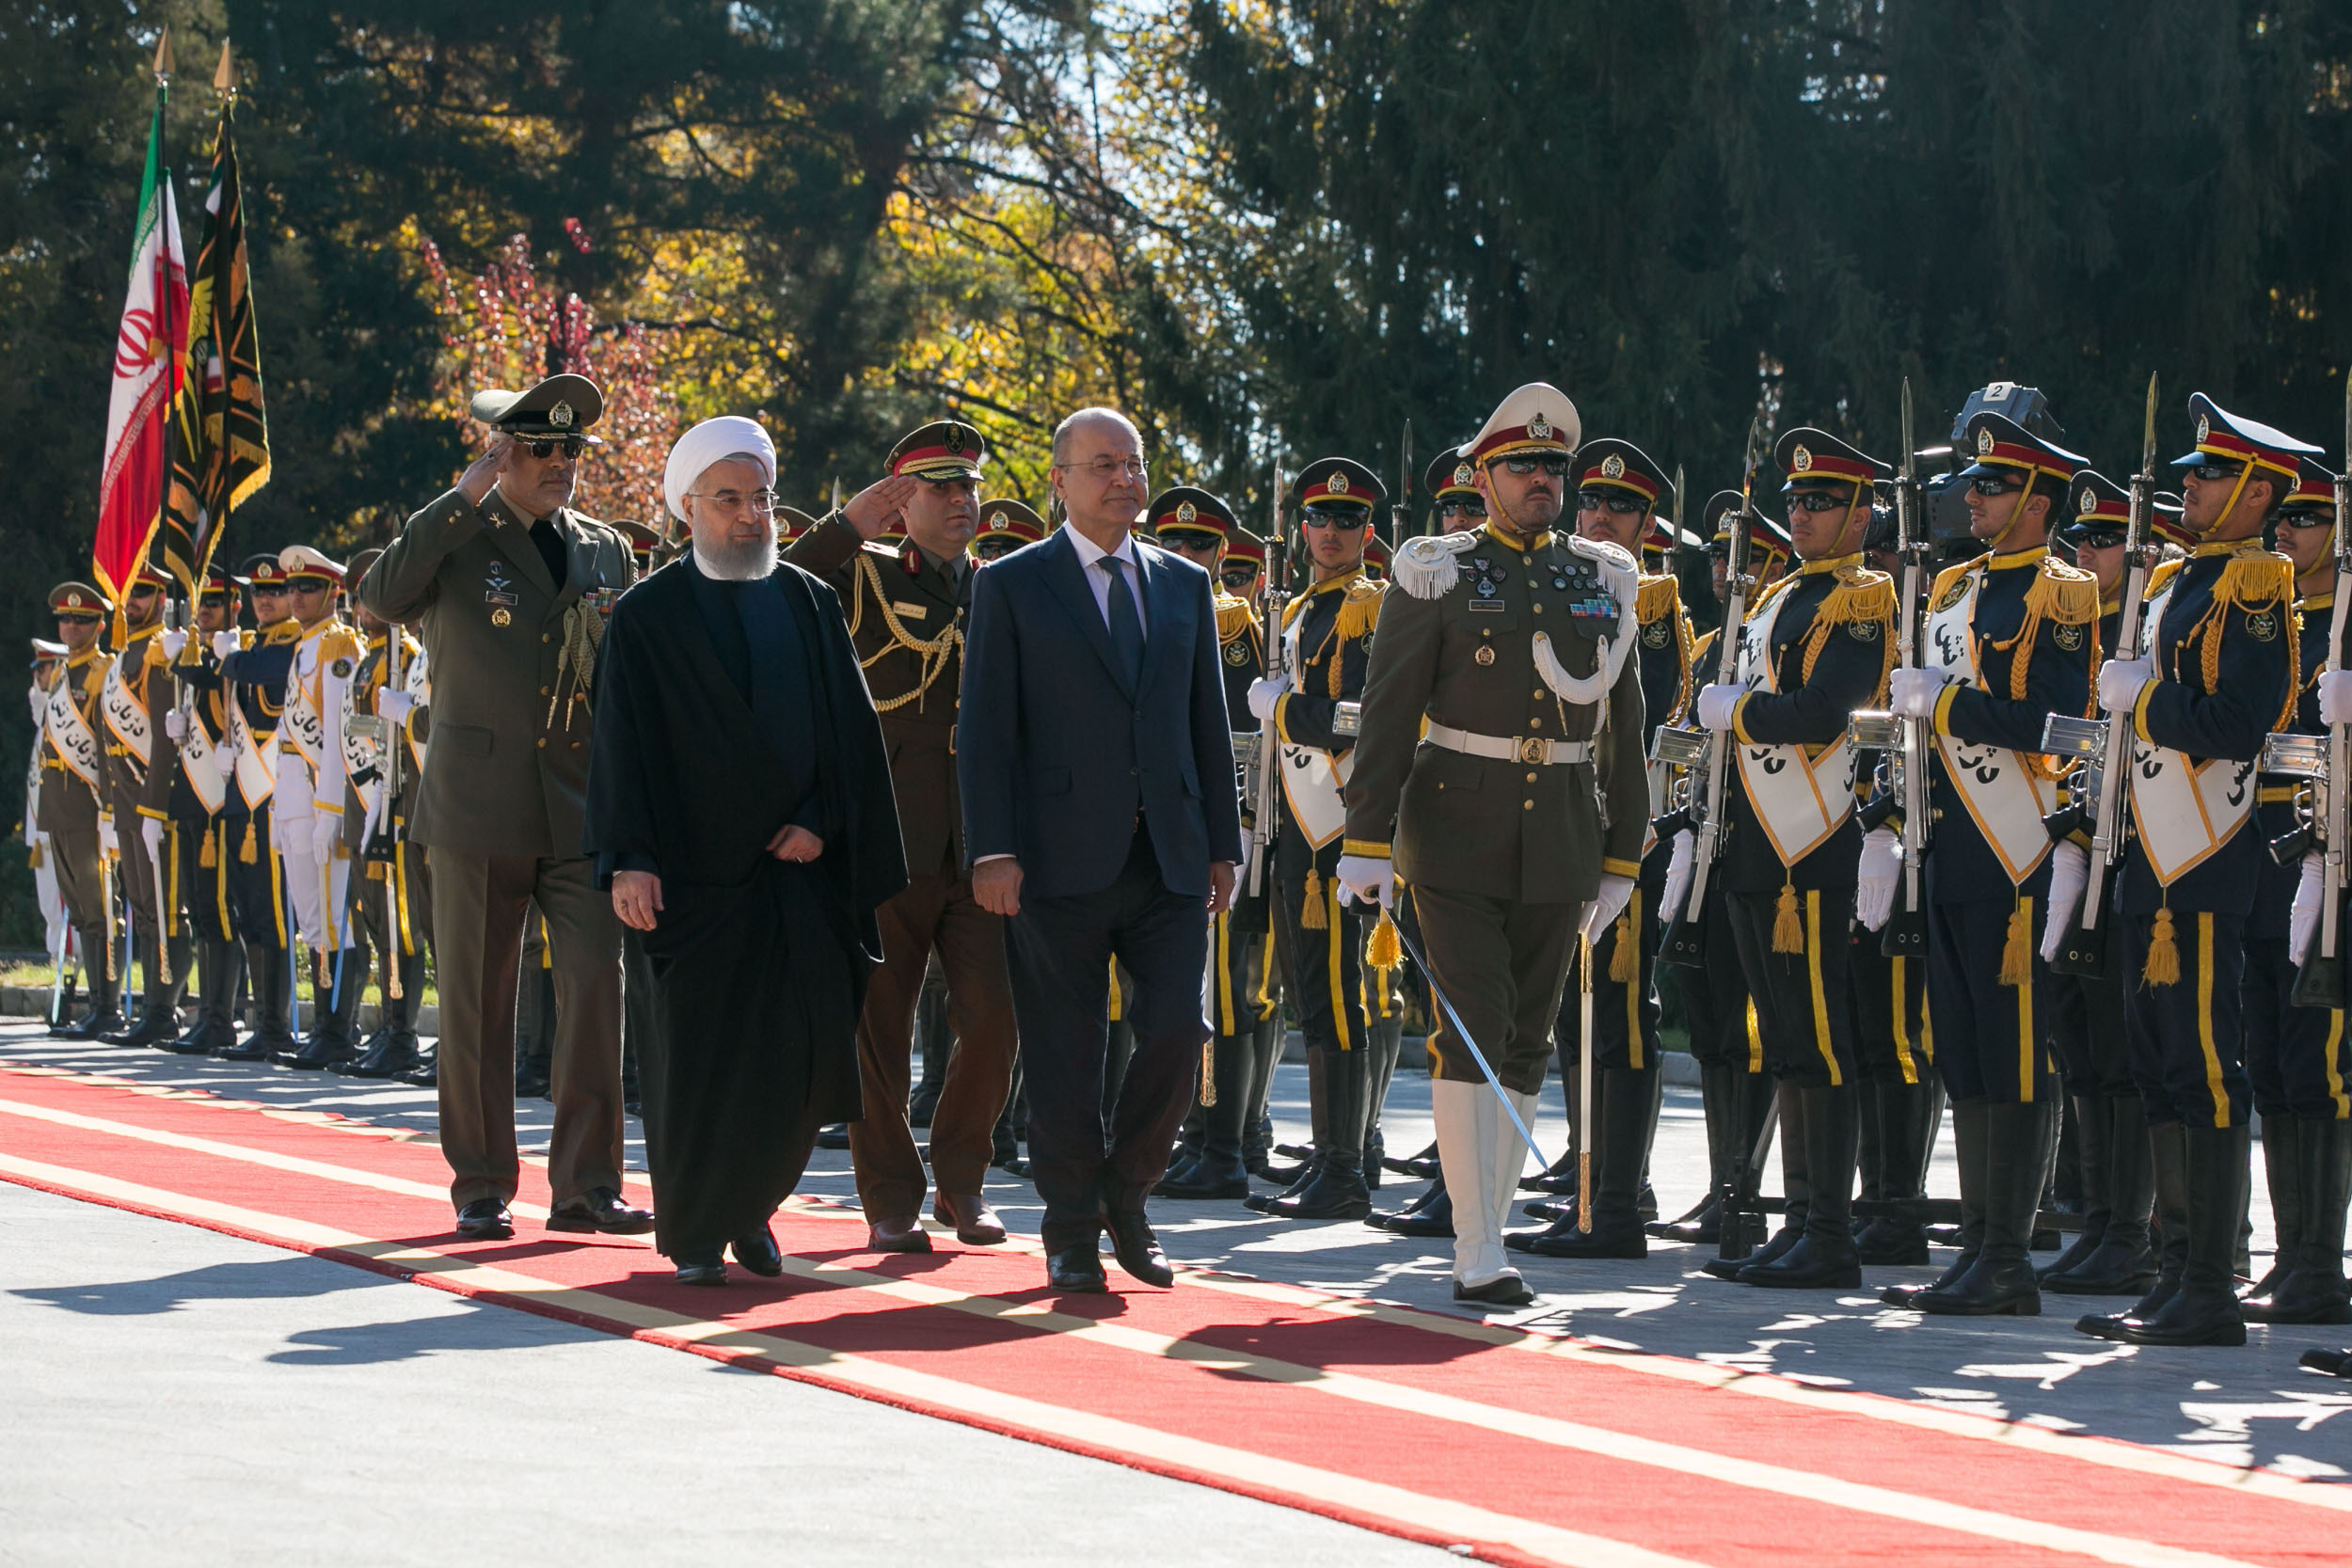 استقبال رسمی روحانی از رئیس جمهور عراق